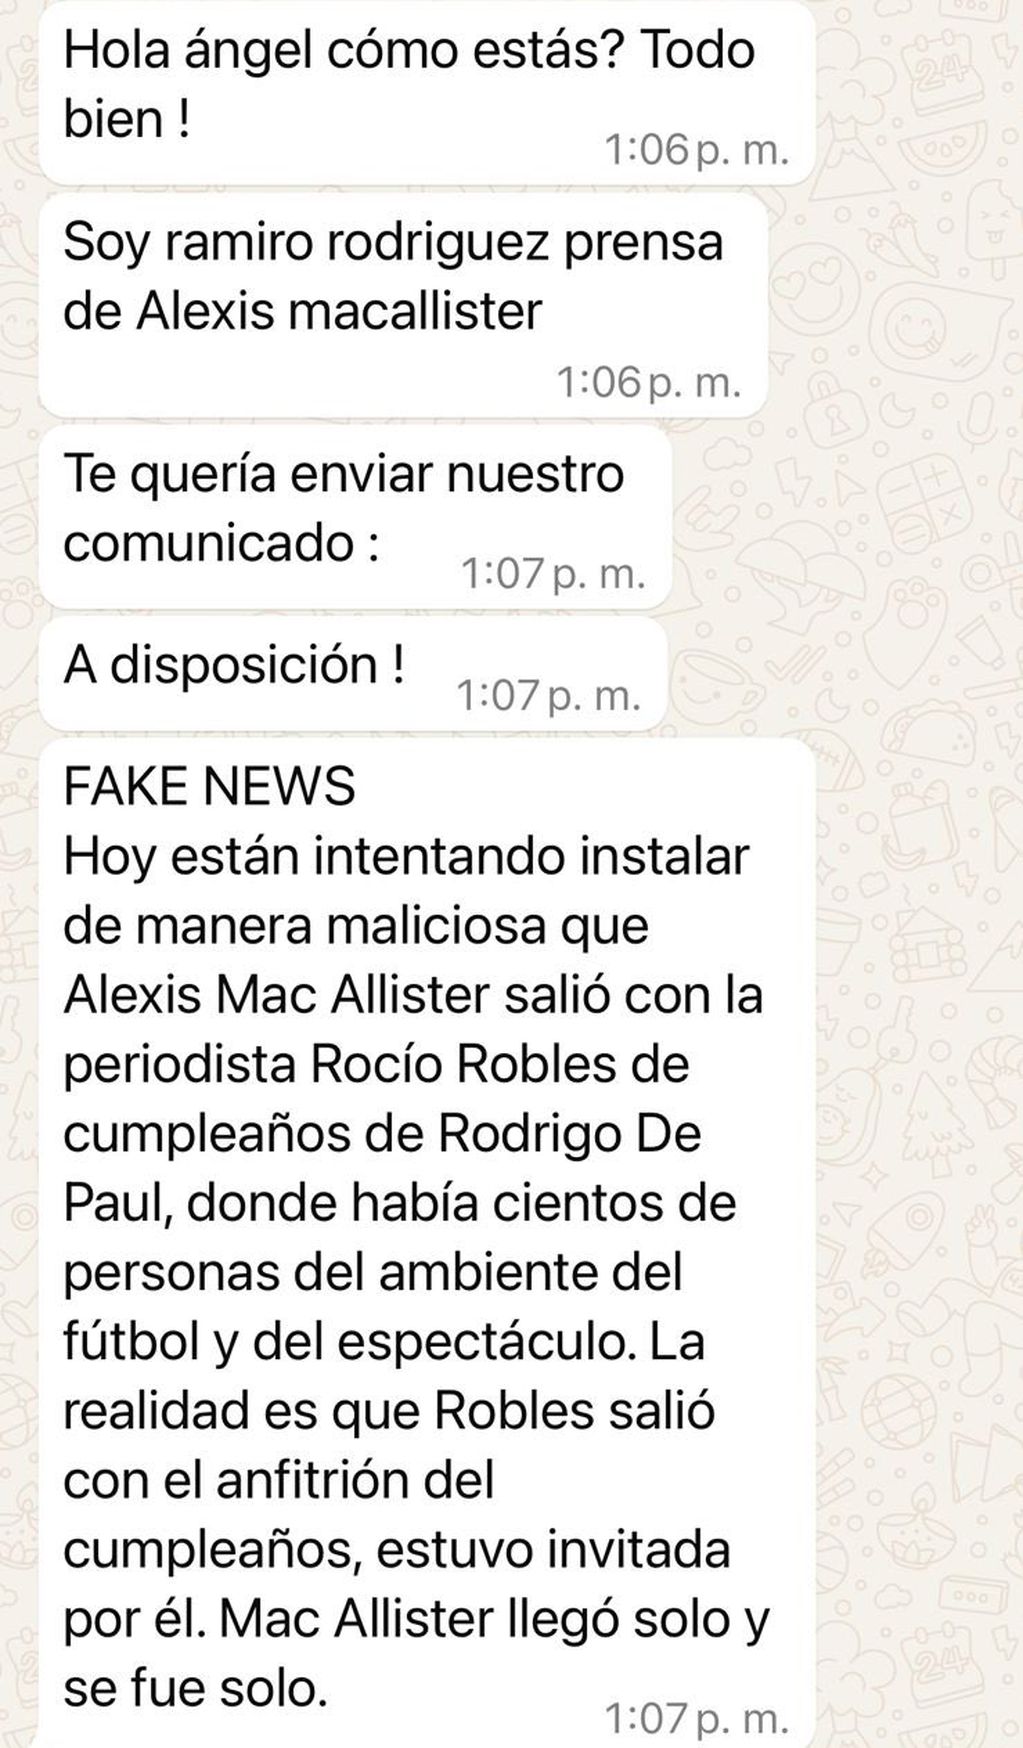 El mensaje del prensa de Alexis Mac Allister sobre los rumores